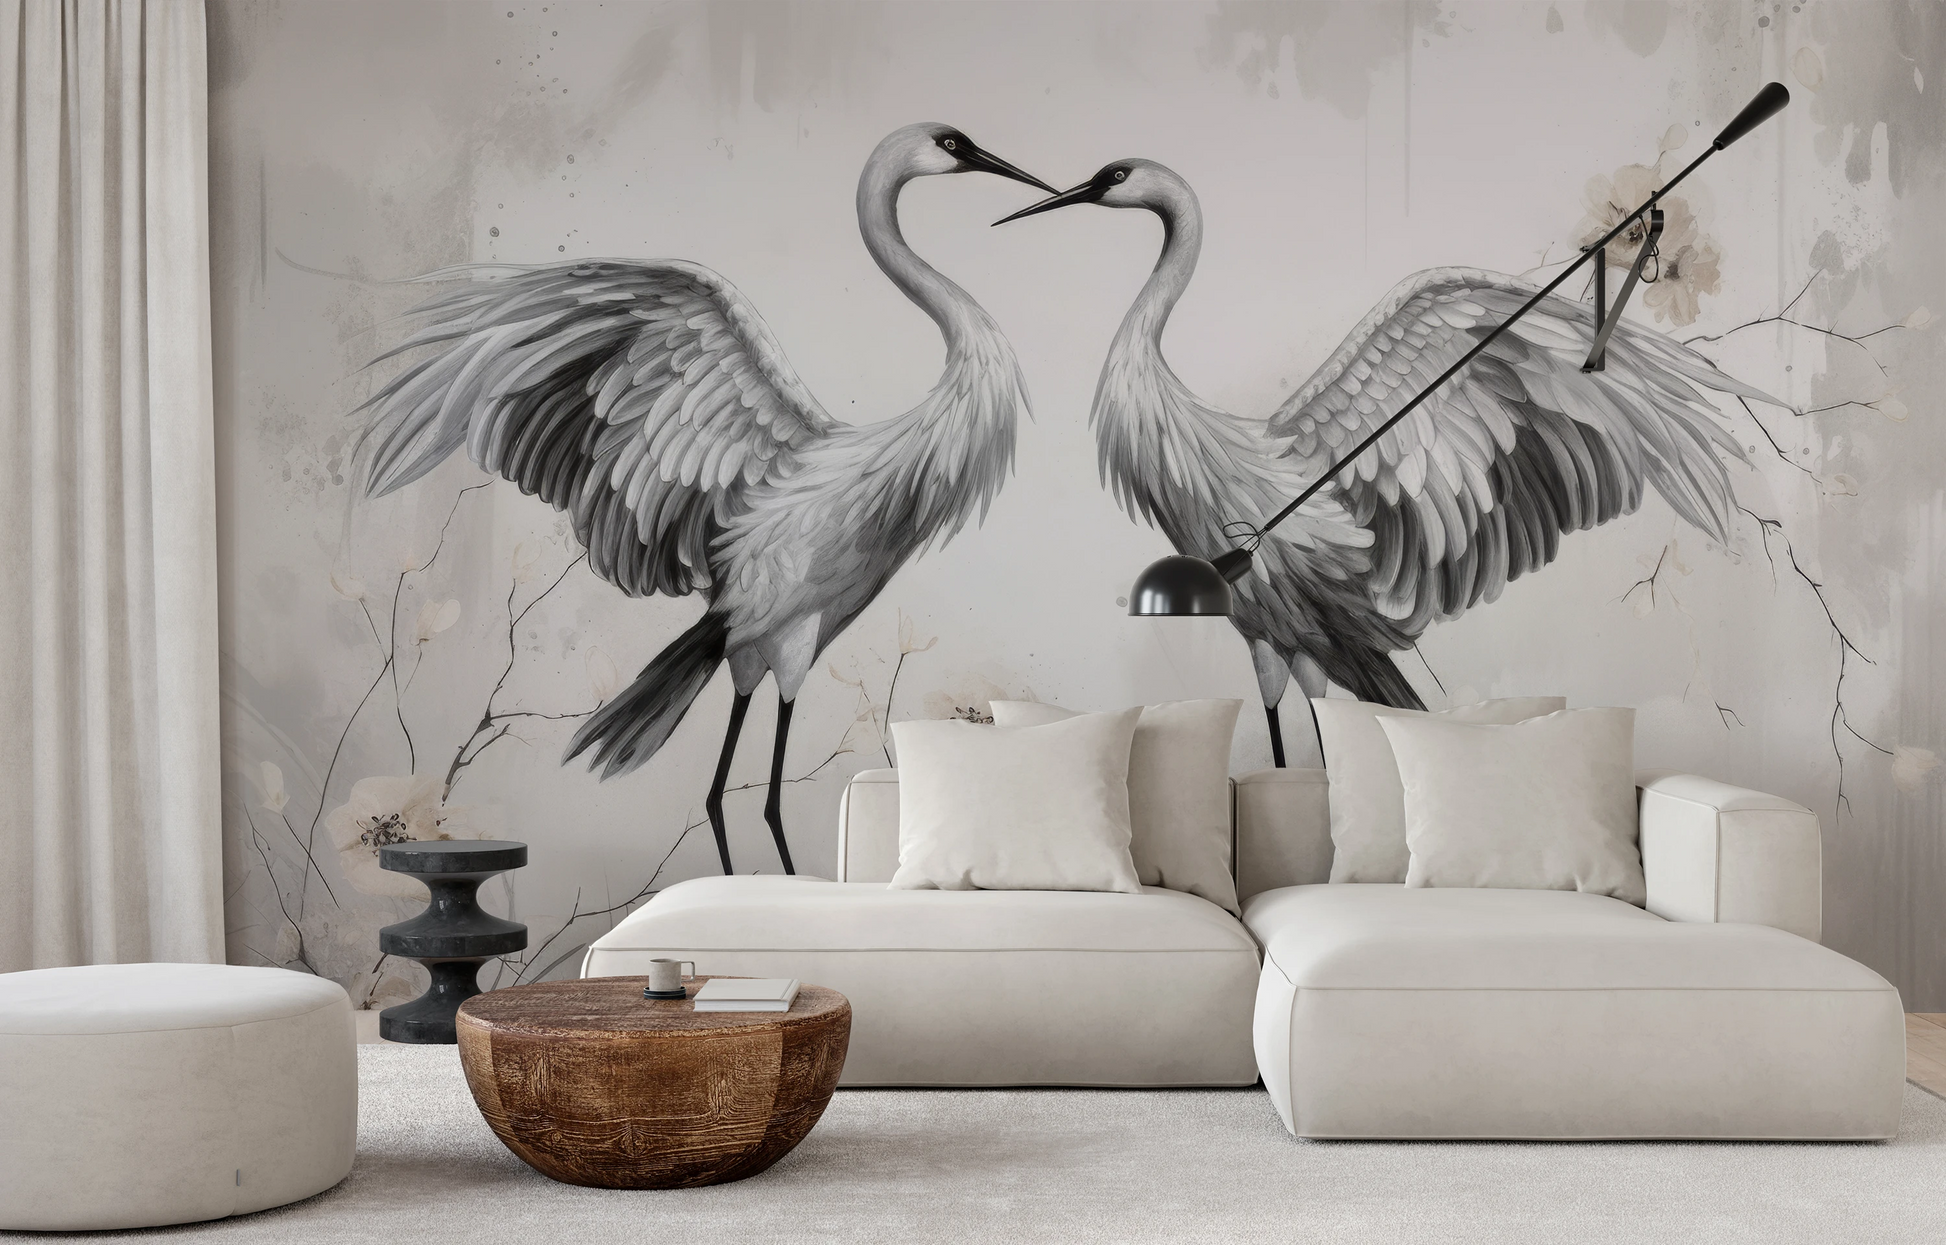 Wzór fototapety artystycznej o nazwie Elegant Cranes pokazanej w aranżacji wnętrza.